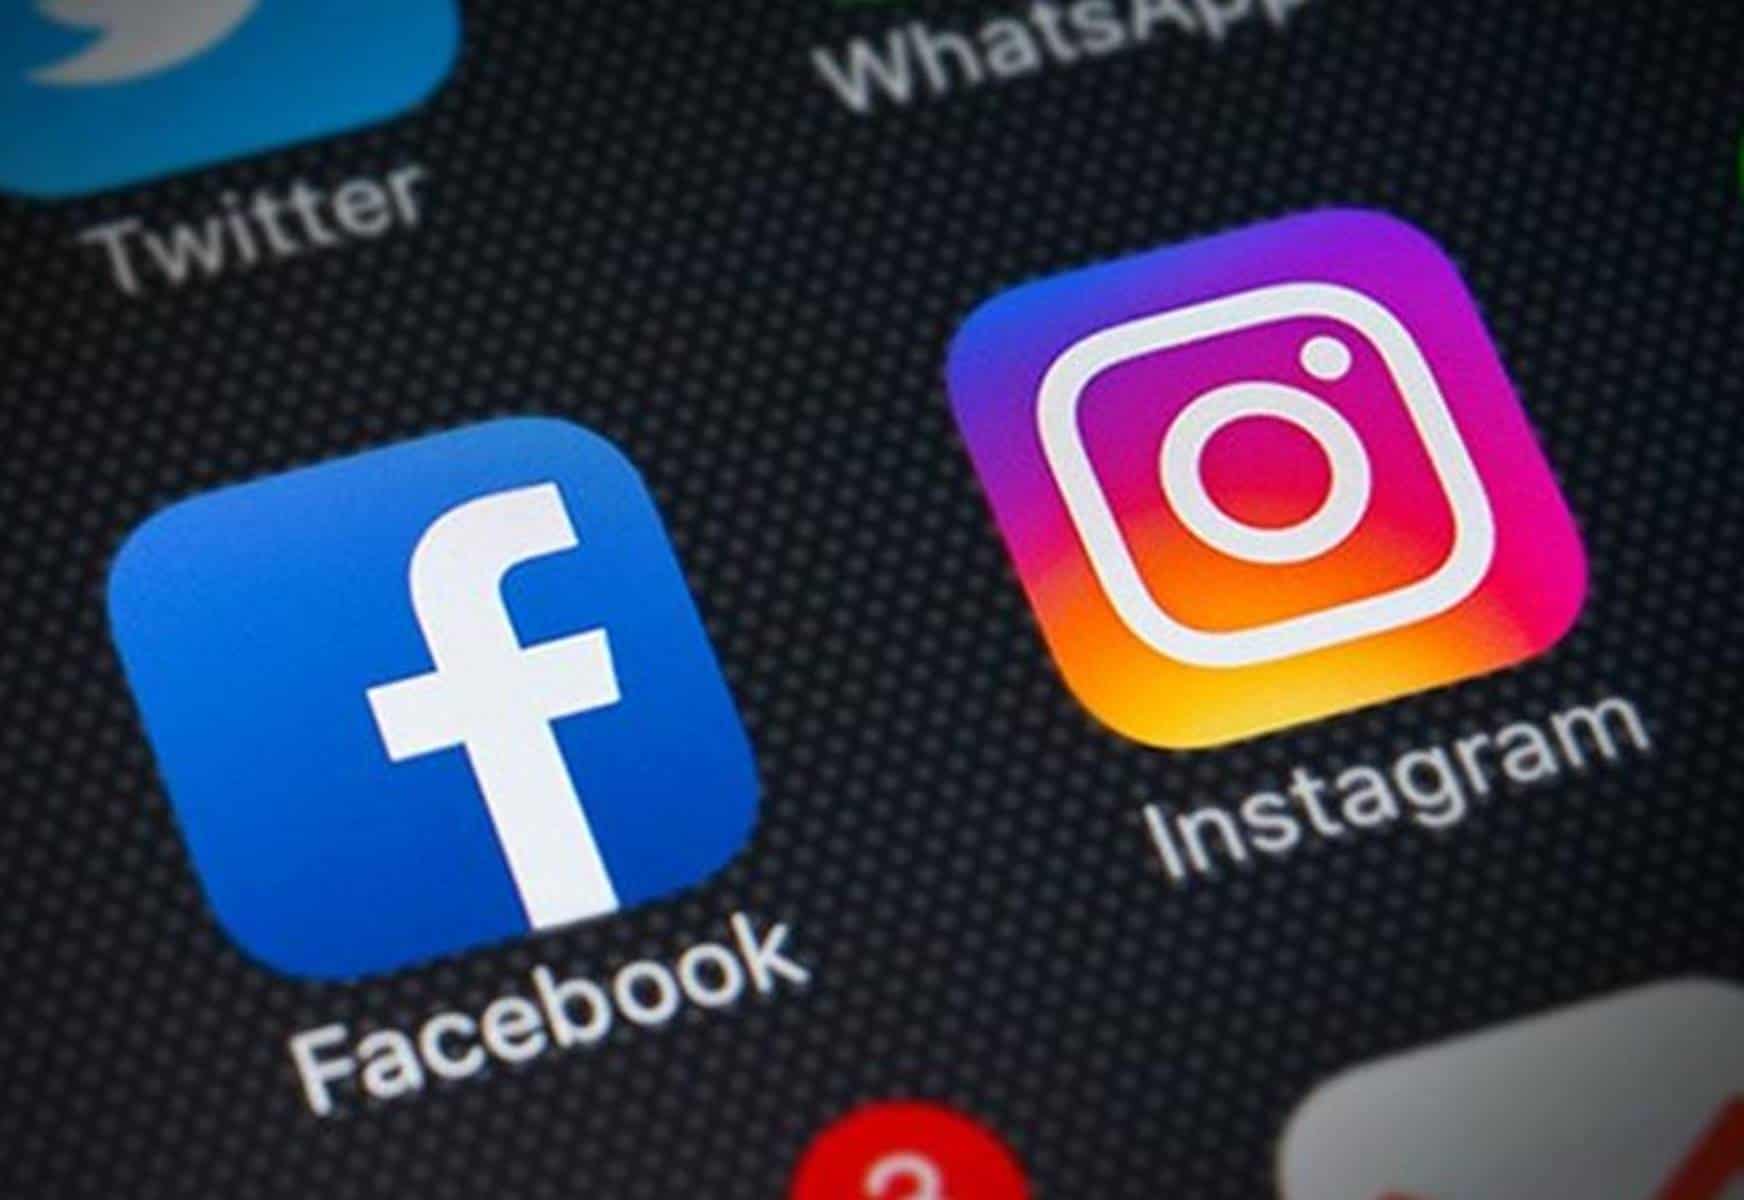 Facebook é acusado de espionar usuários através do Instagram